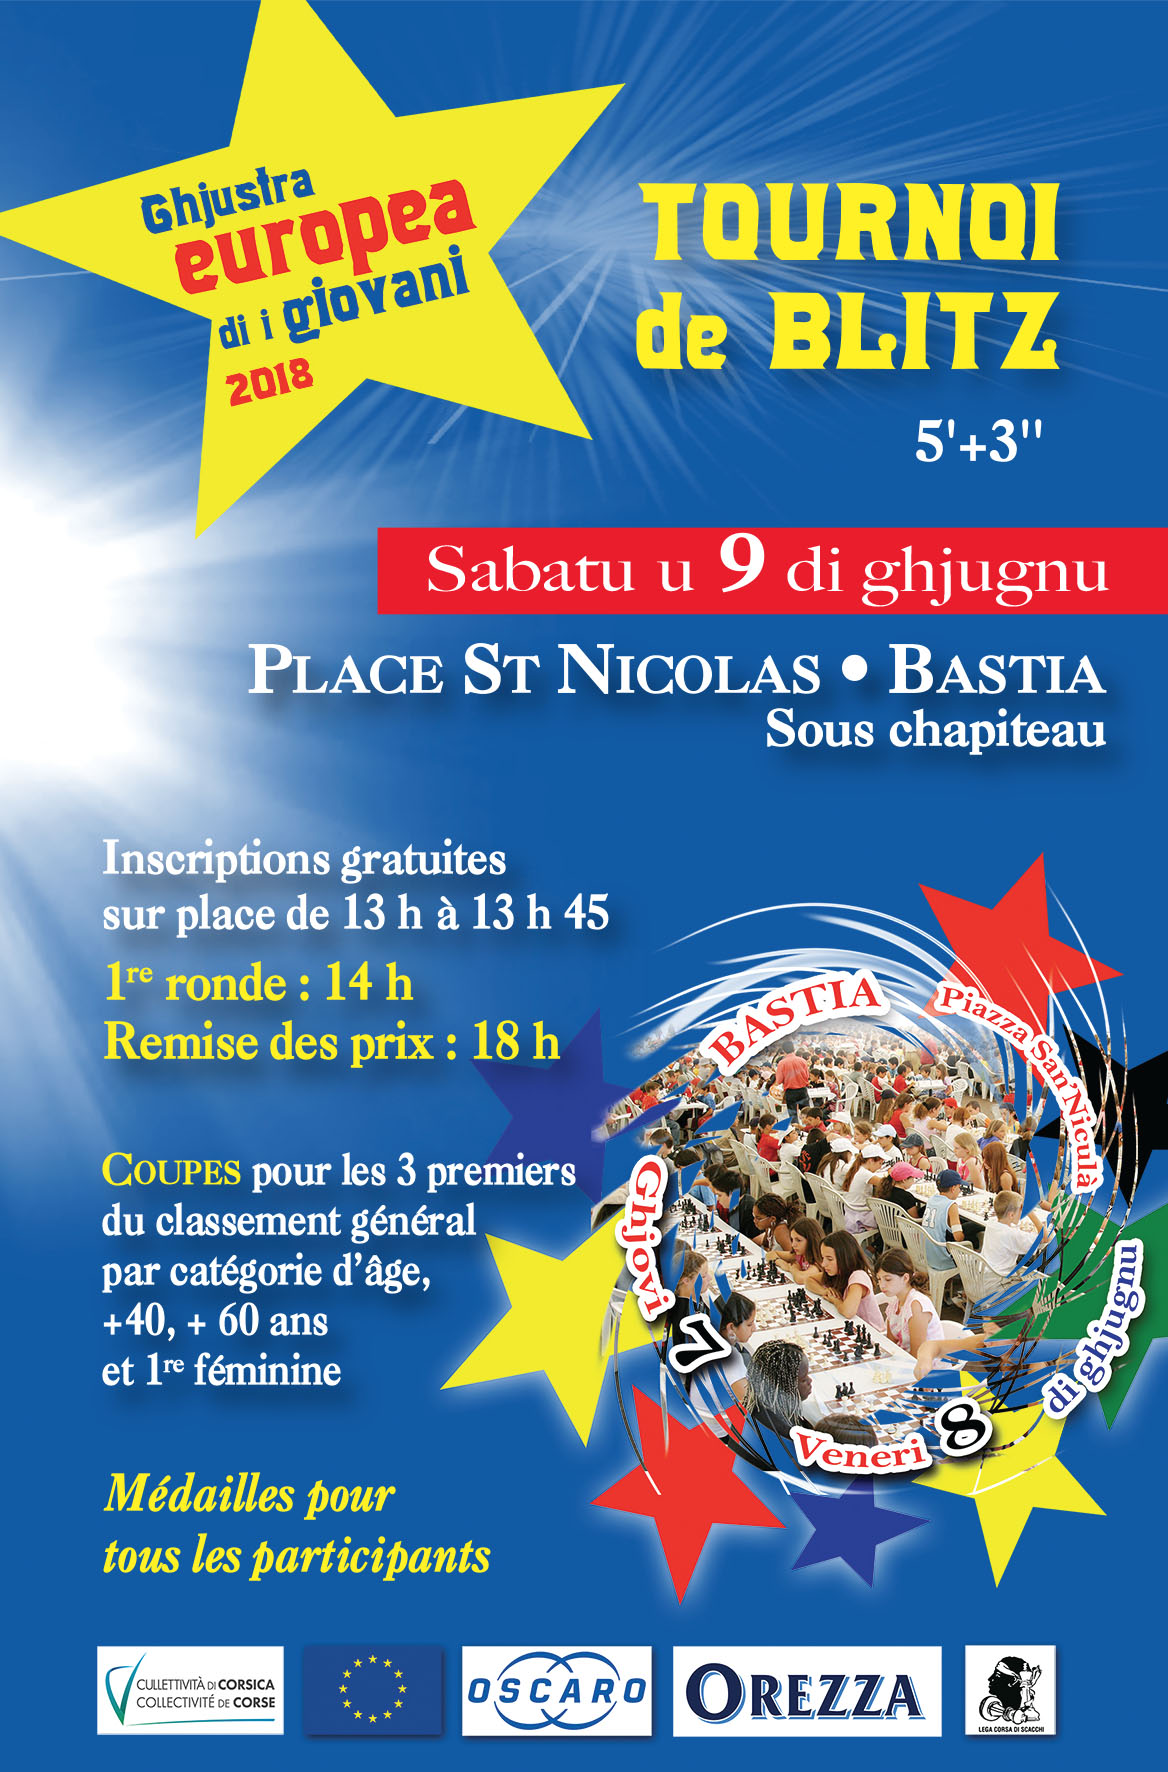 Un tournoi hors norme avec des milliers de participants à Bastia